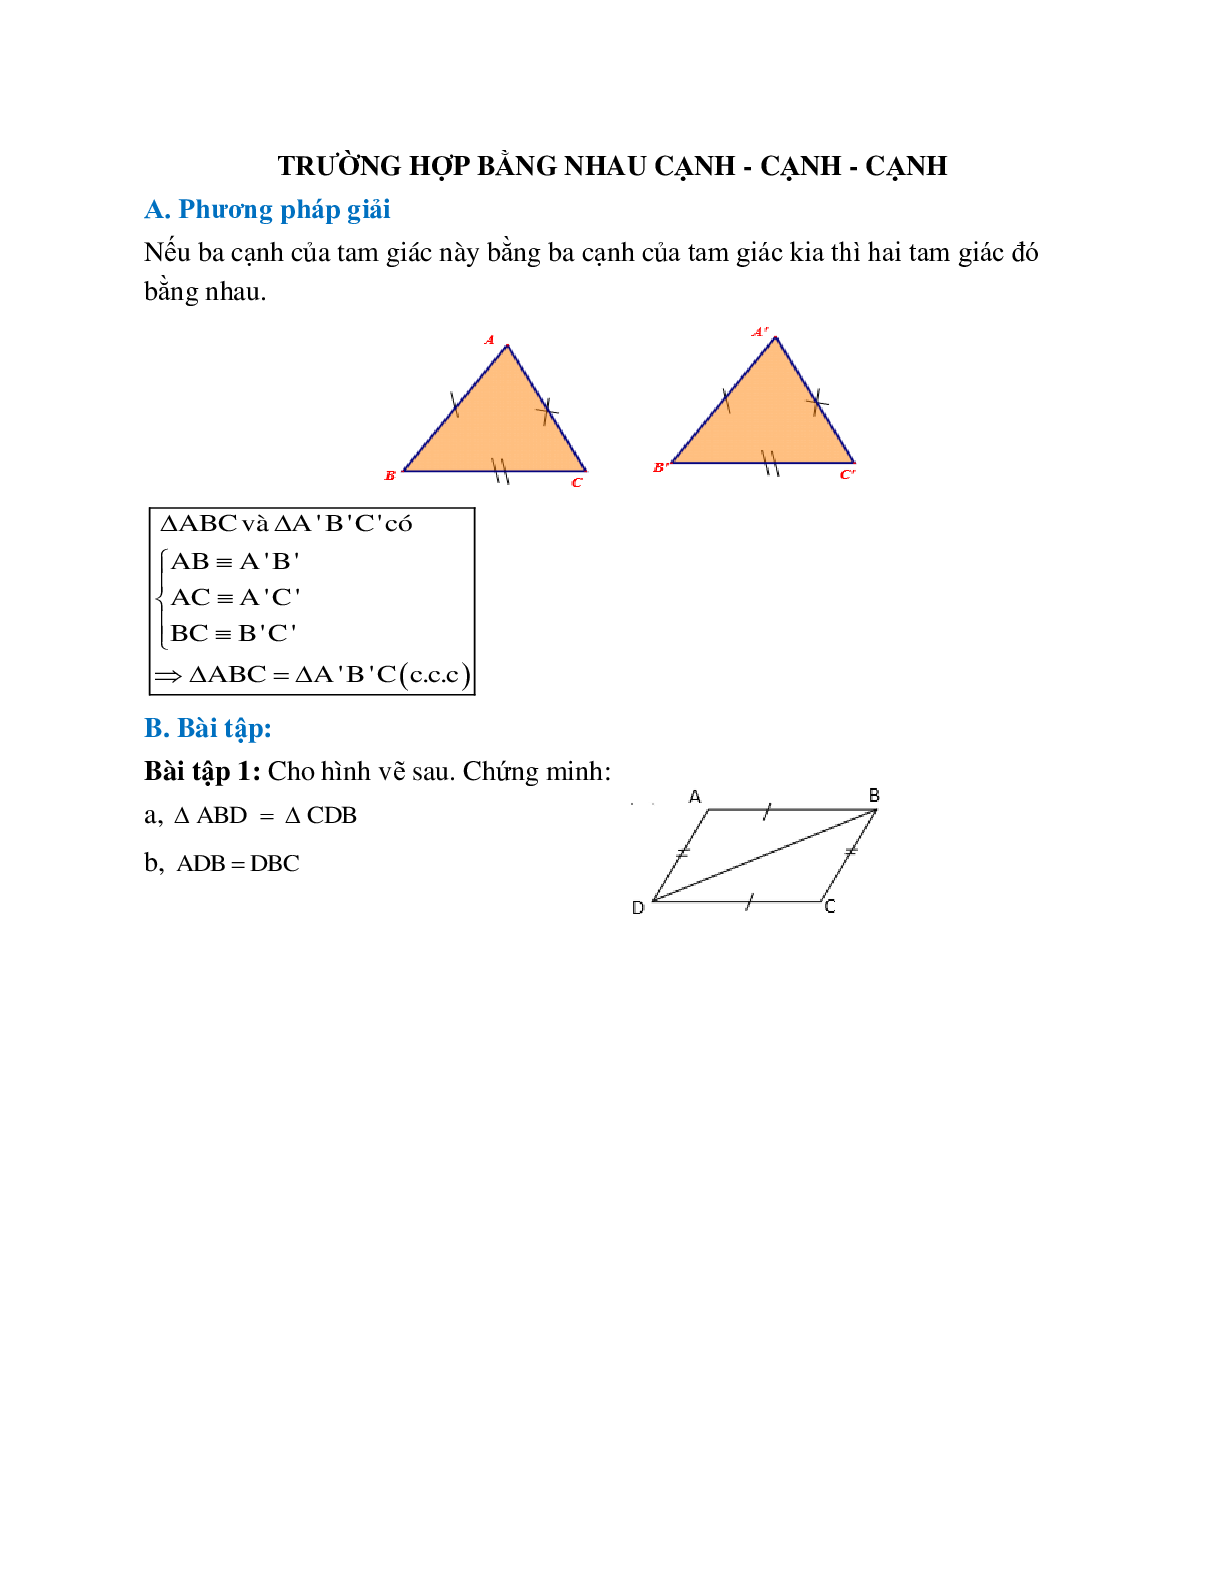 Phương pháp giải bài tập Trường hợp bằng nhau cạnh - cạnh - cạnh chọn lọc (trang 1)